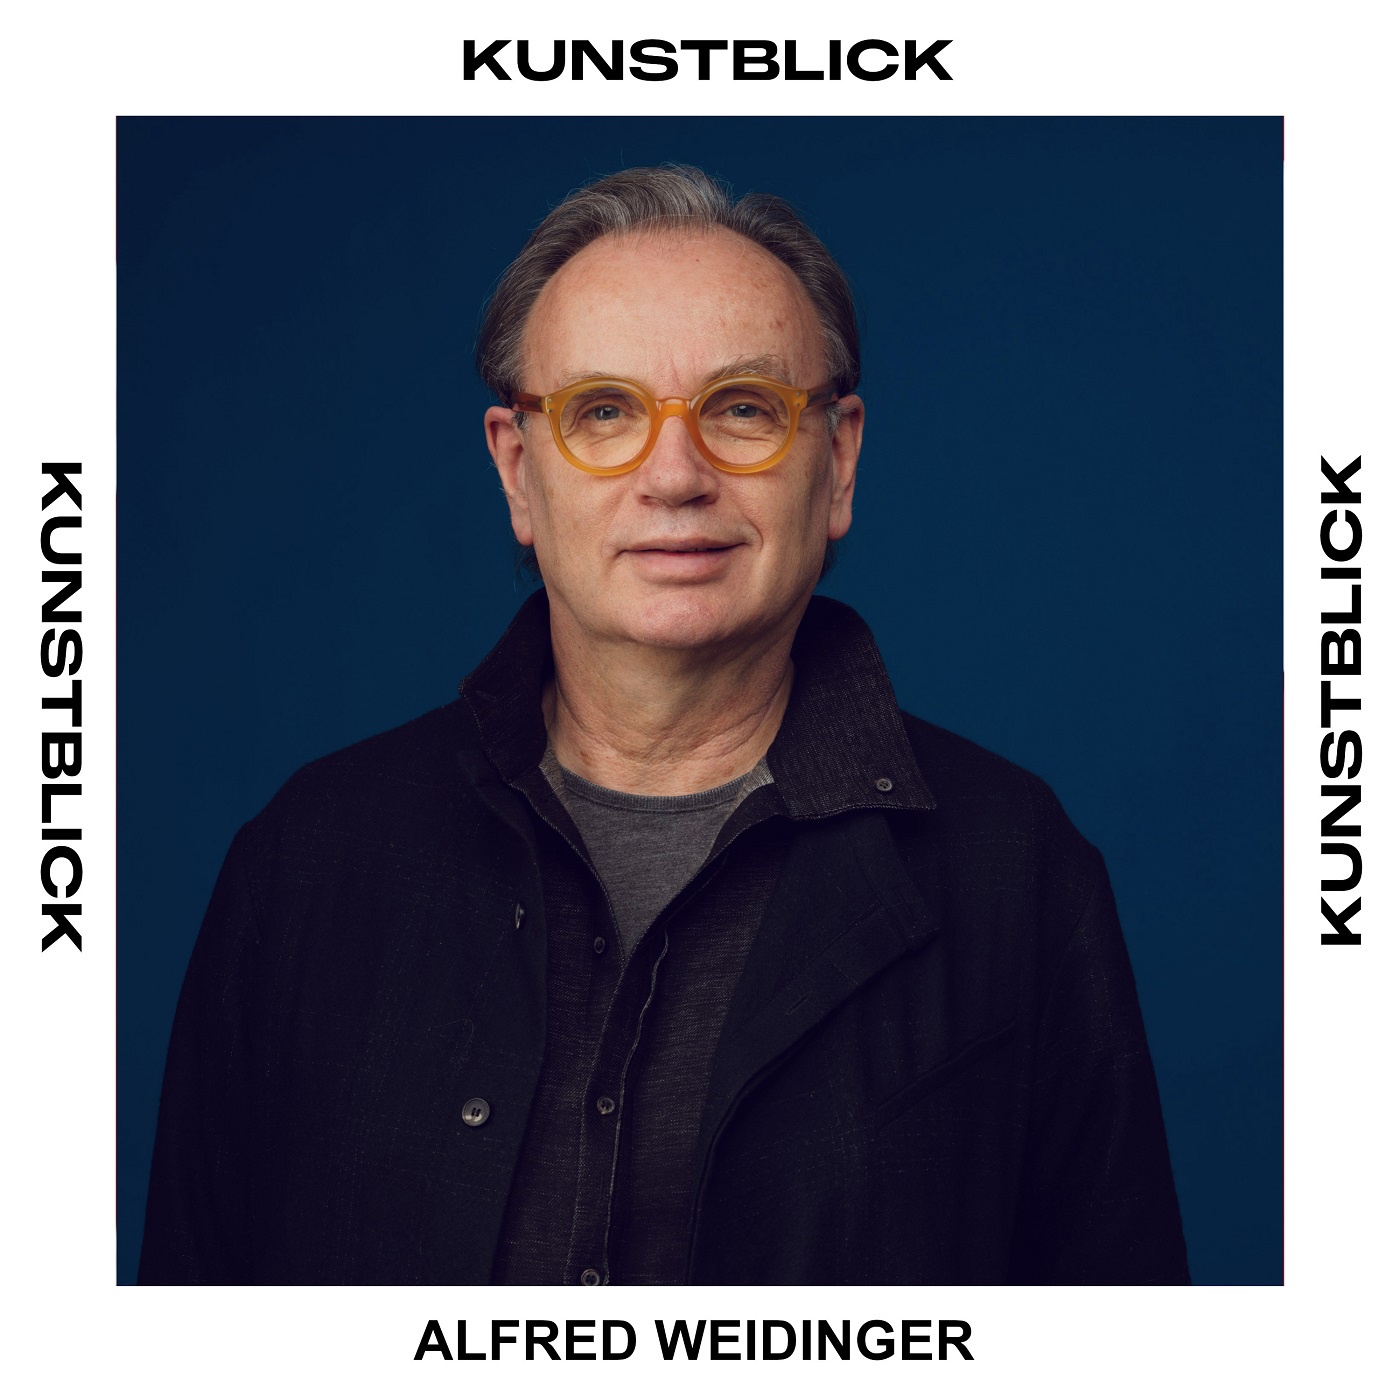 Alfred Weidinger - Kunsthistoriker, Museumsmanager und Fotograf